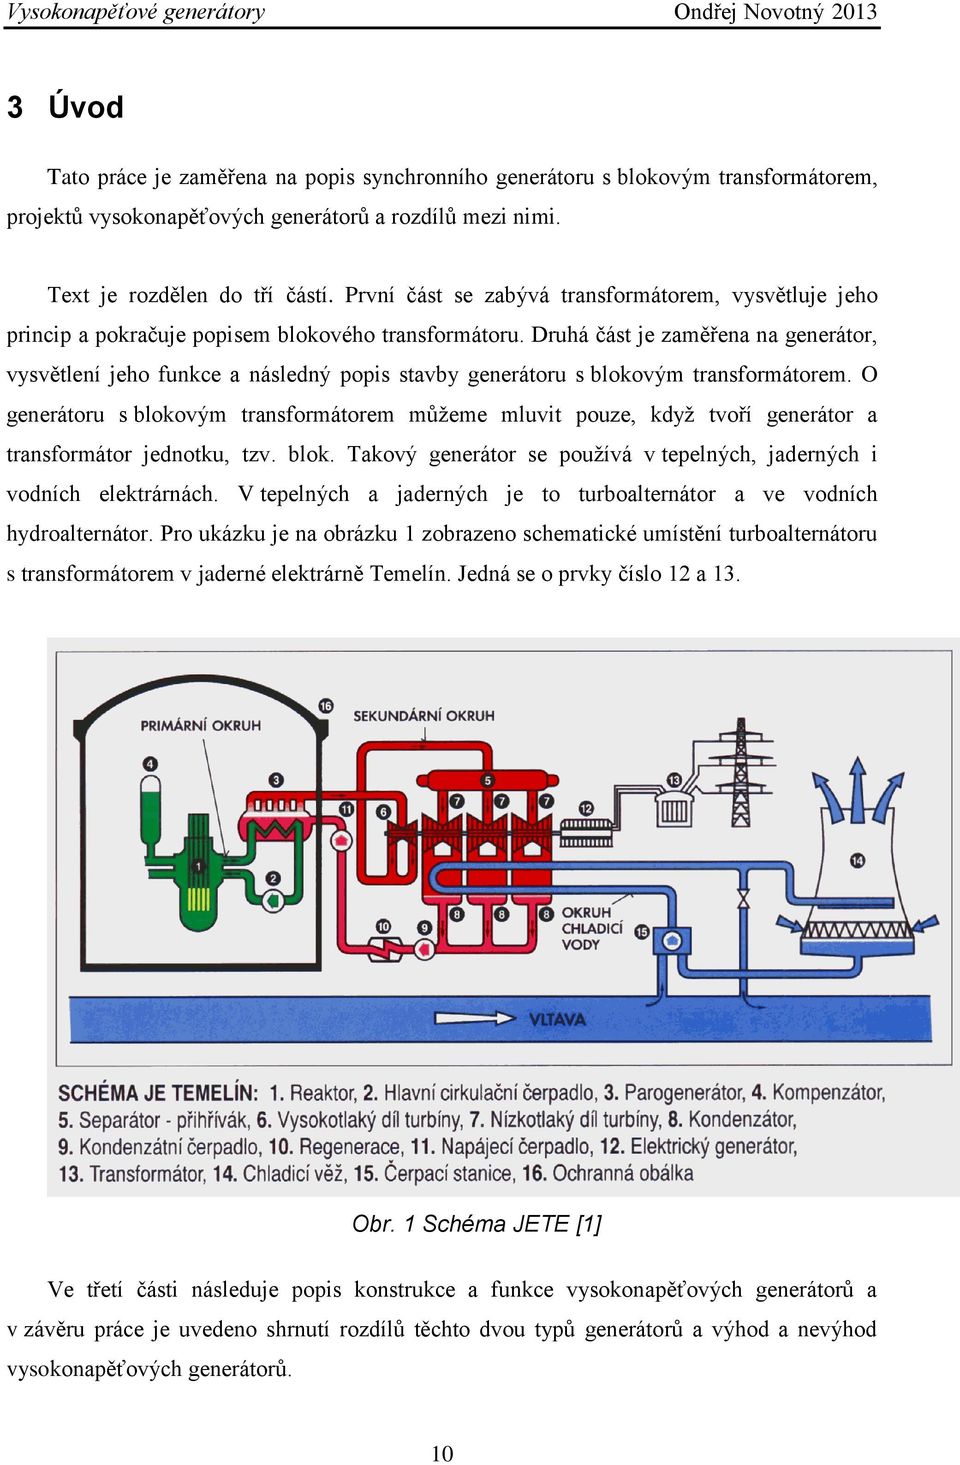 Druhá část je zaměřena na generátor, vysvětlení jeho funkce a následný popis stavby generátoru s blokovým transformátorem.